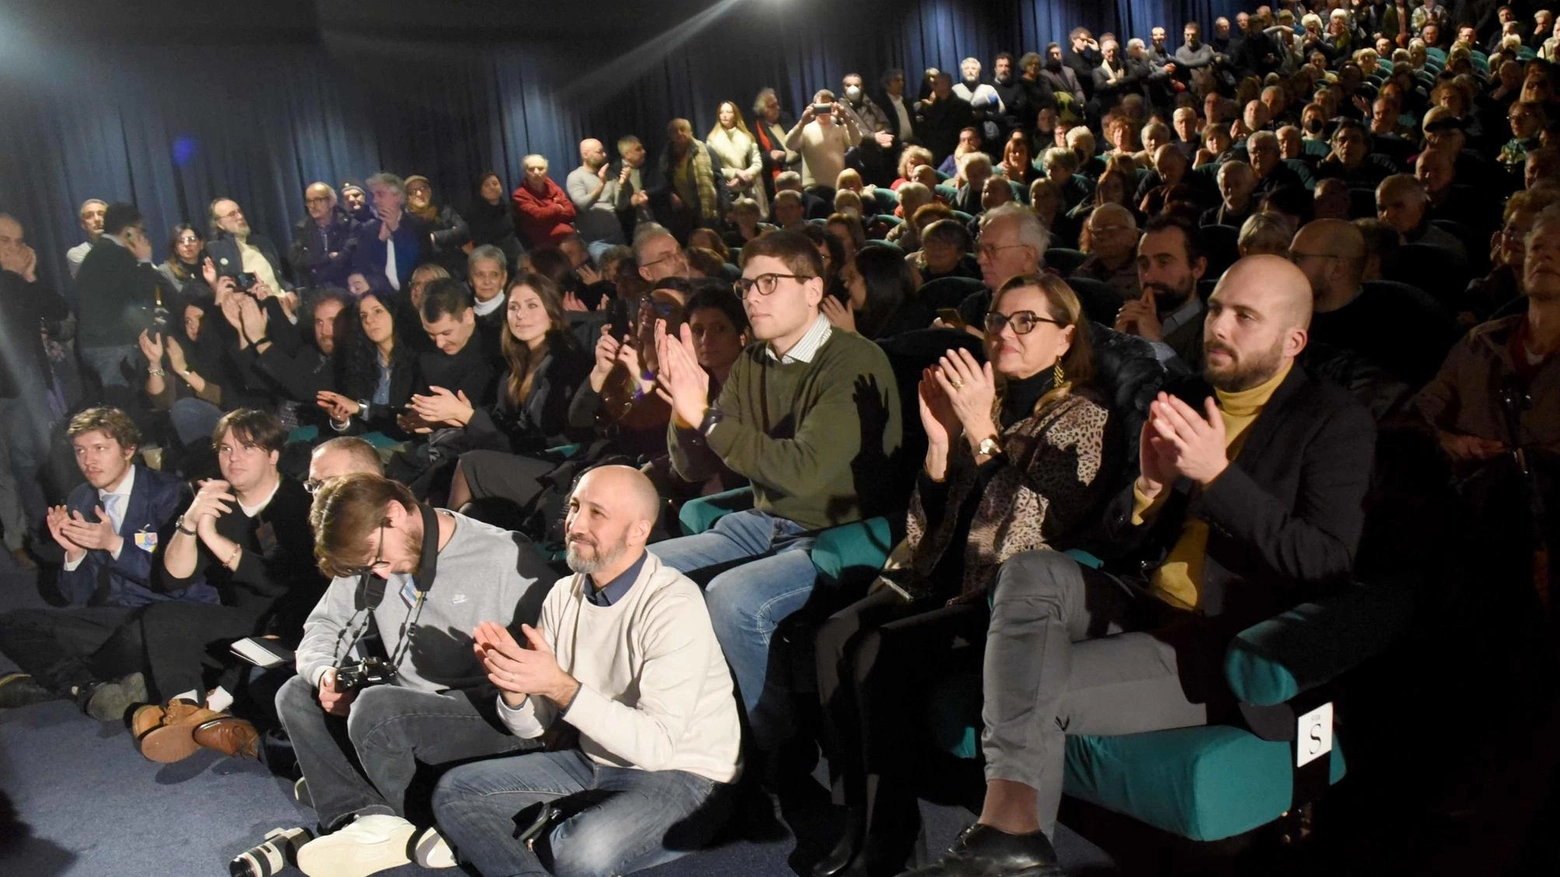 Anselmo si candida, bagno di folla: "Idee e diritti: ossigeno per Ferrara"